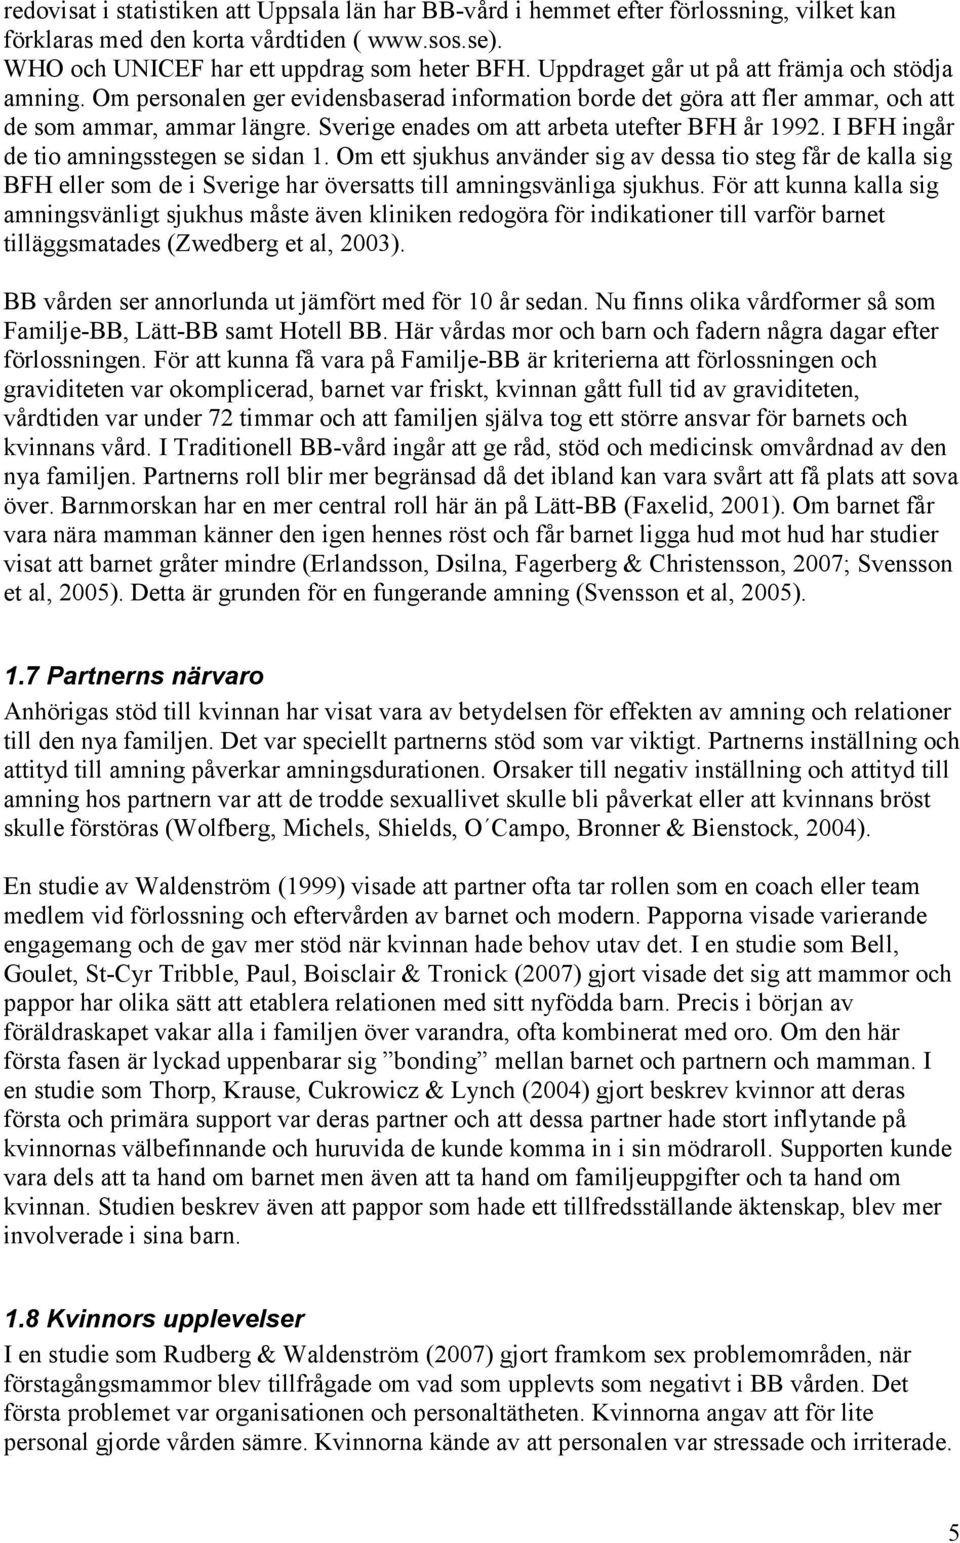 Sverige enades om att arbeta utefter BFH år 1992. I BFH ingår de tio amningsstegen se sidan 1.